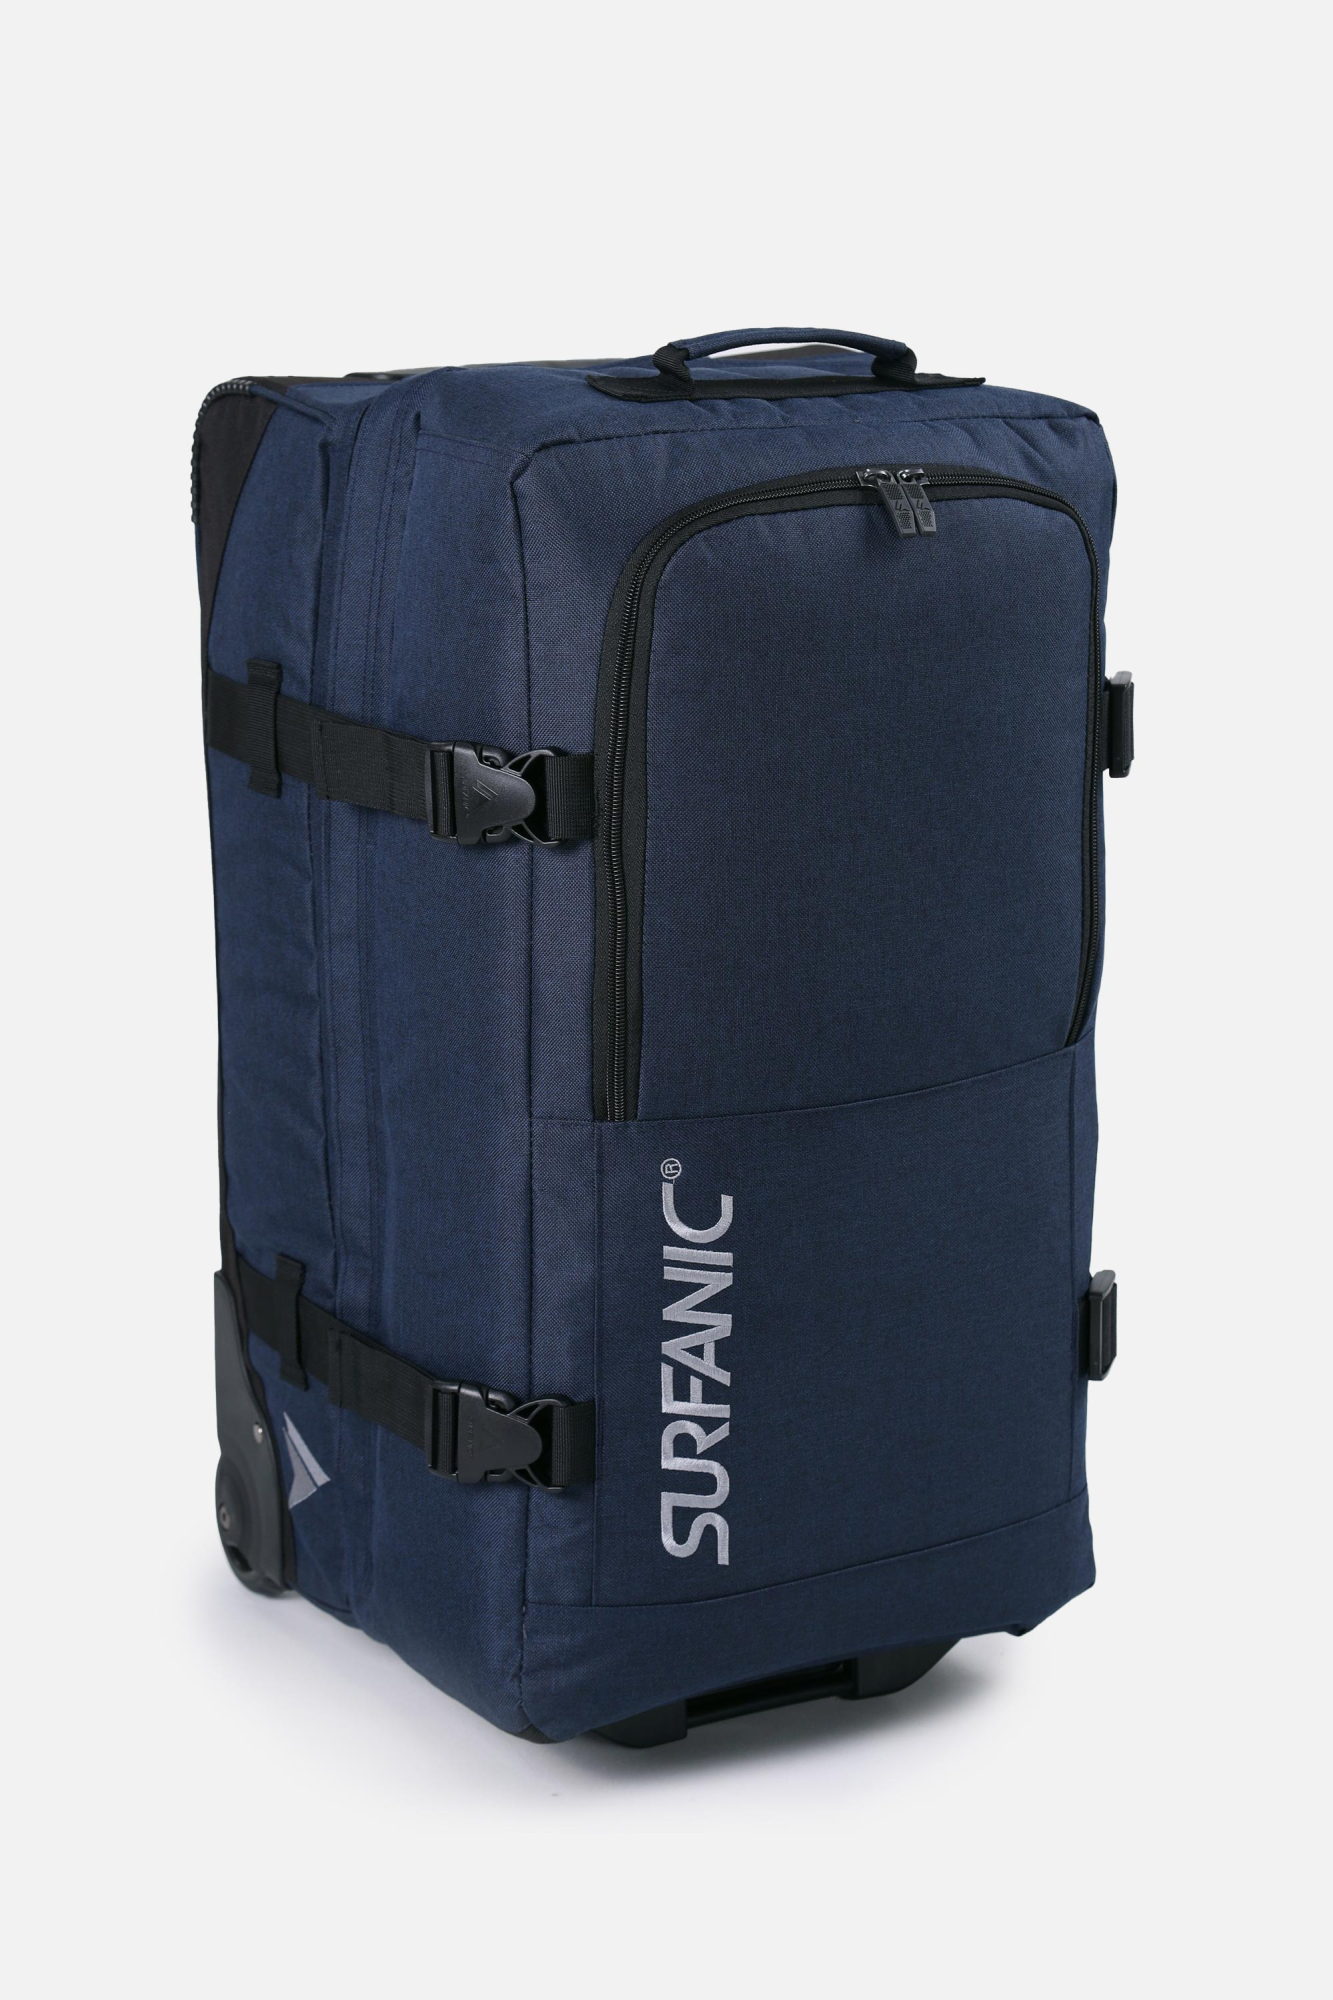 Surfanic Unisex Maxim 70 Roller Bag Blue - Size: 70 Litre